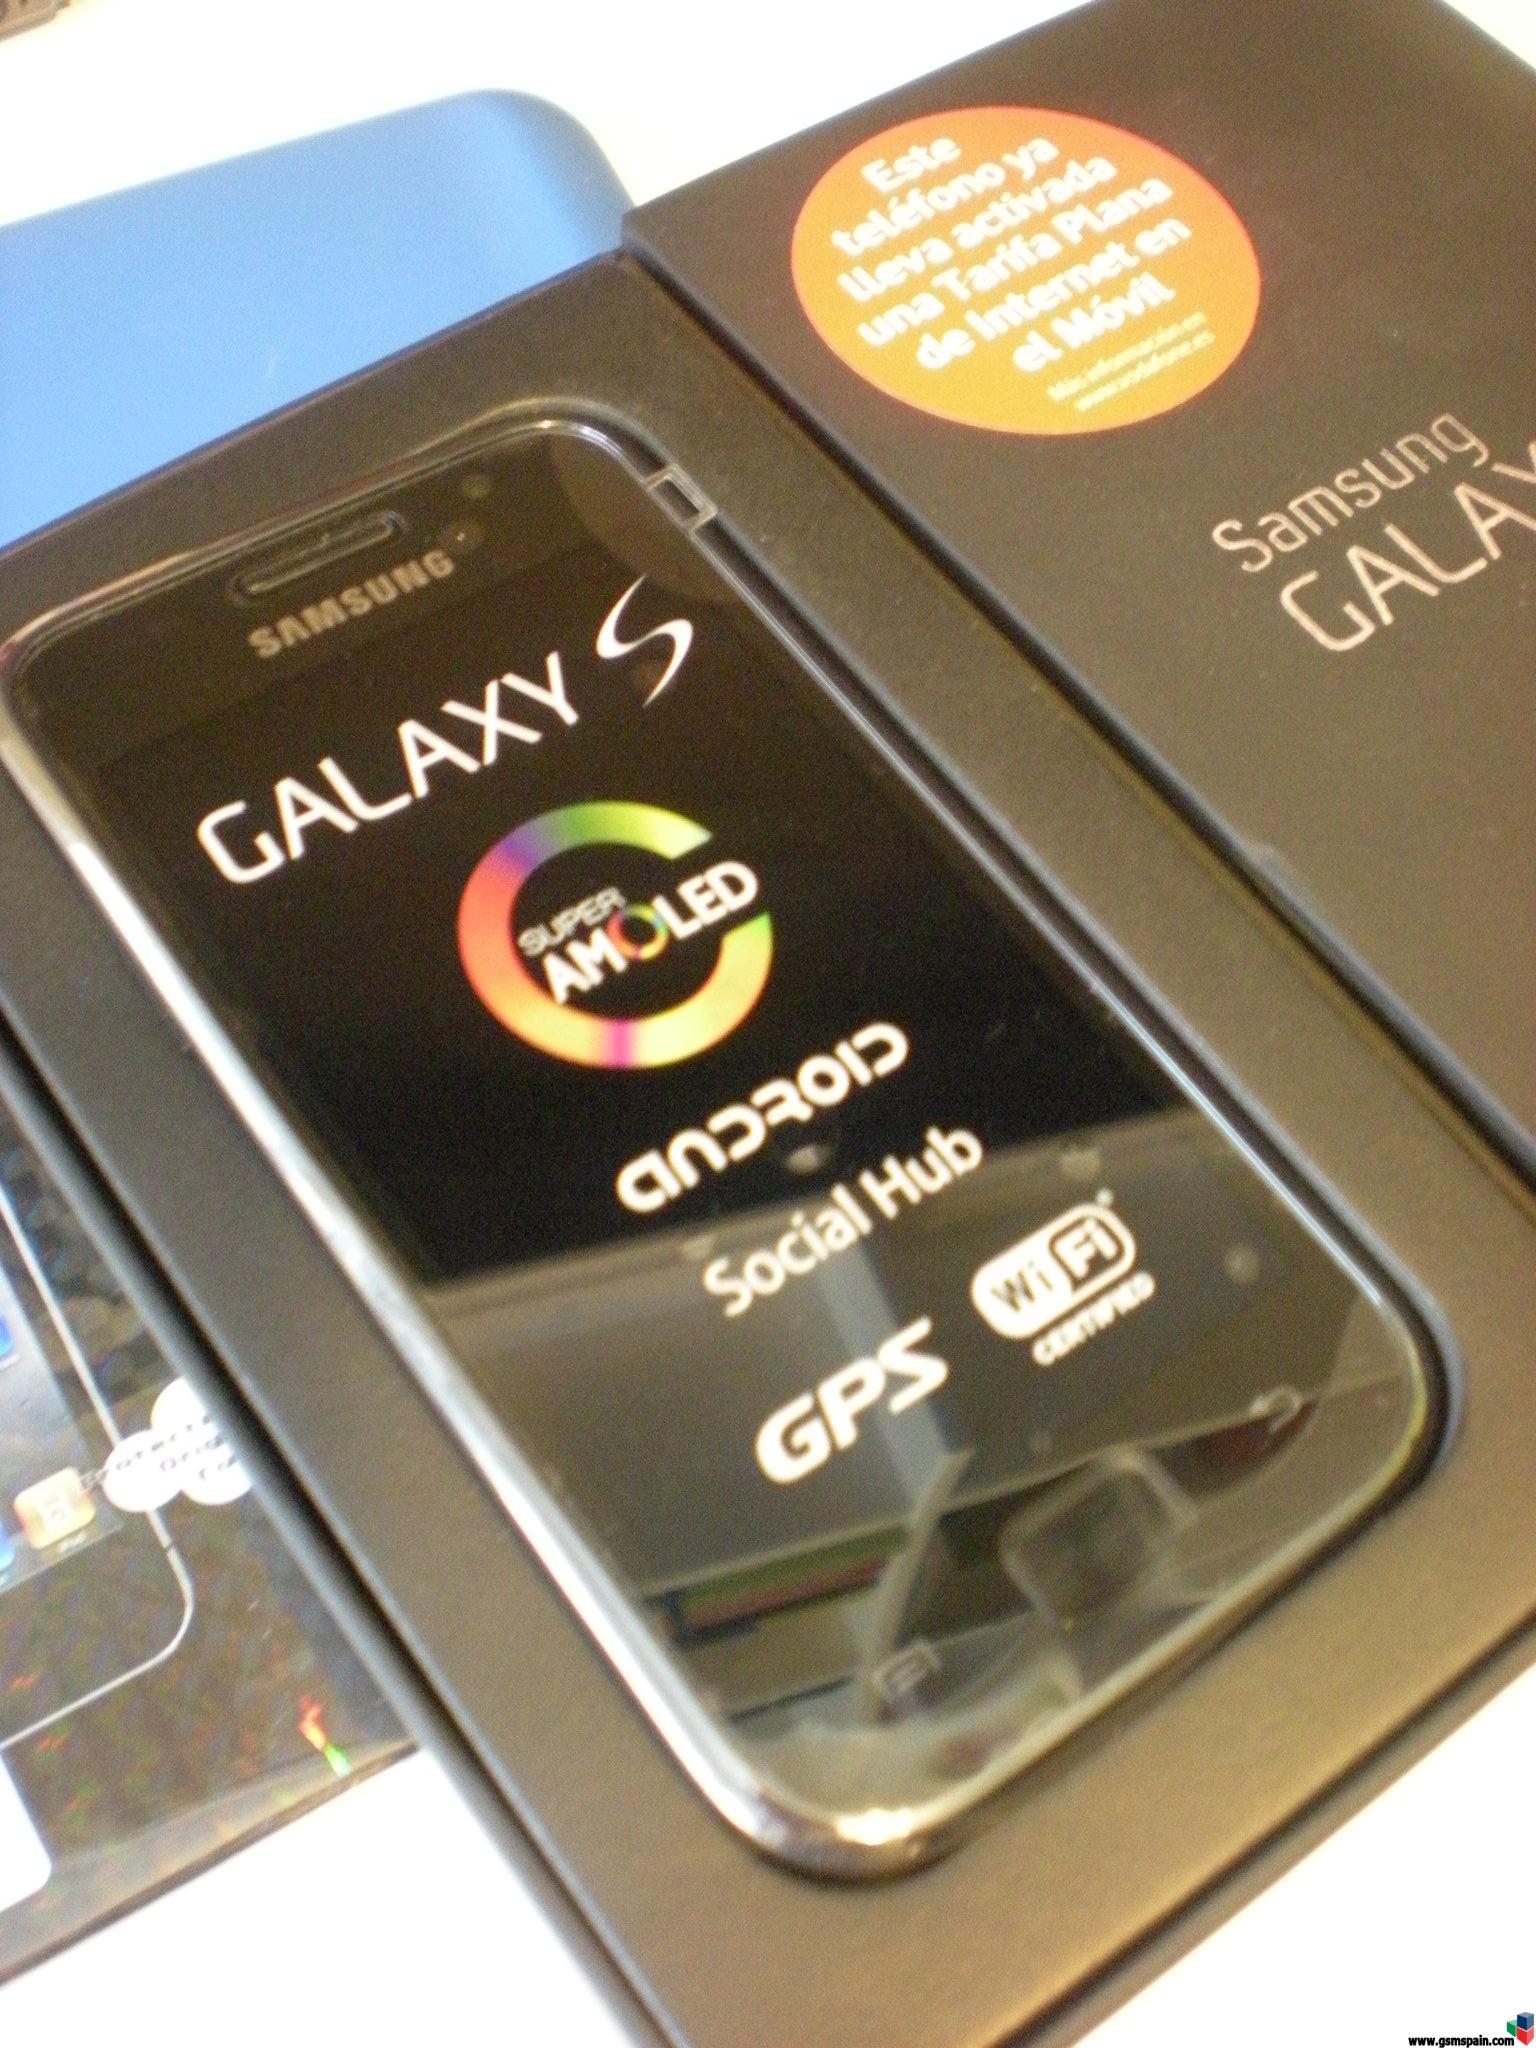 [VENDO] Samsung Galaxy S + Factura y Garantia + Extras